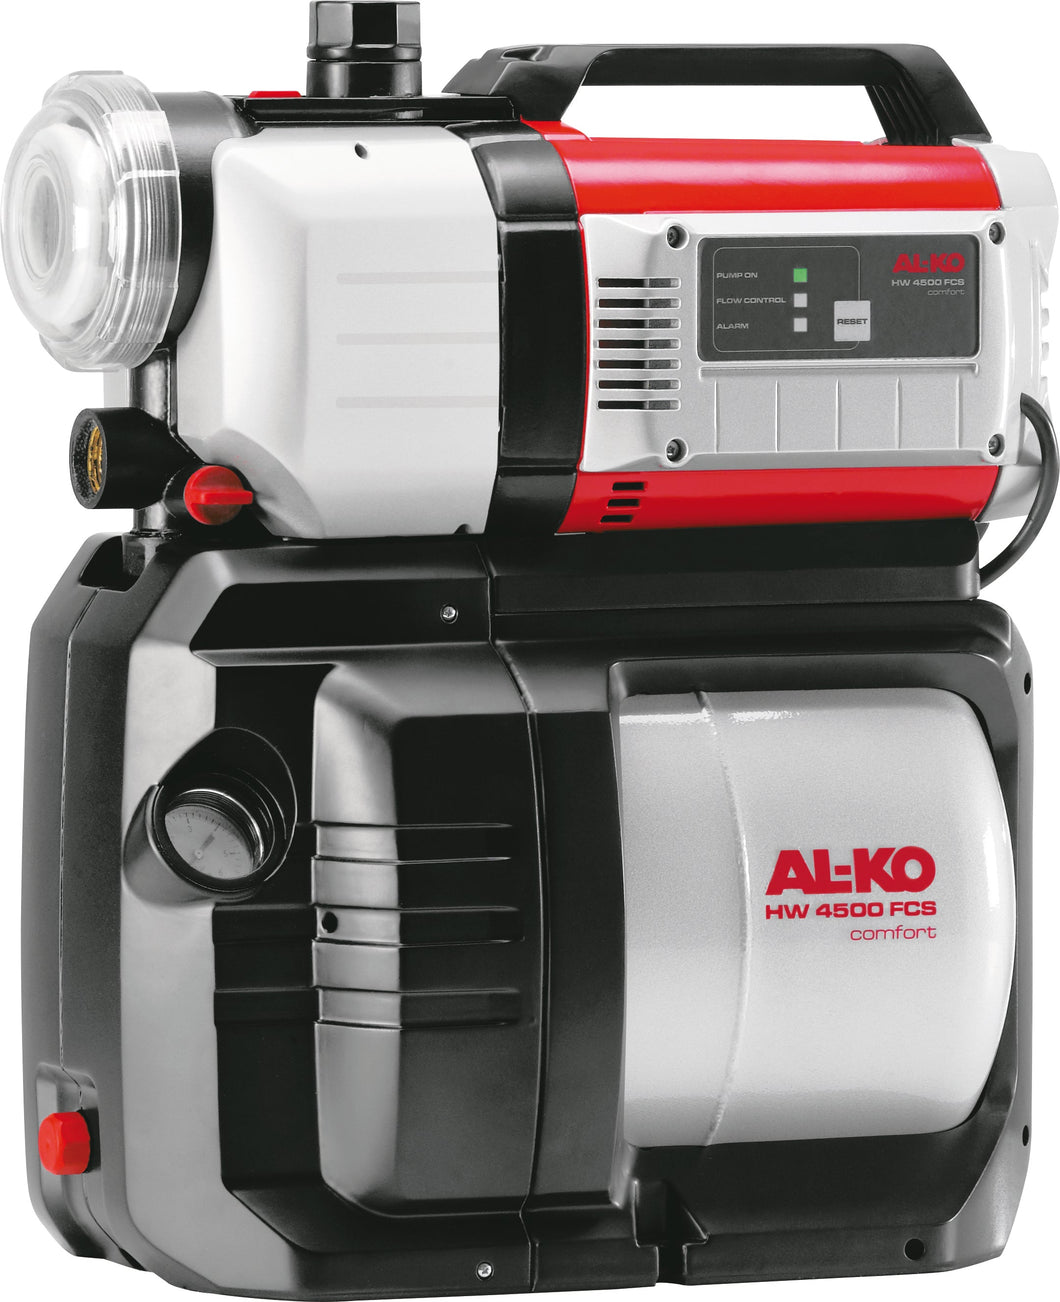 AL-KO HW 4500 FCS Comfort Water Pump